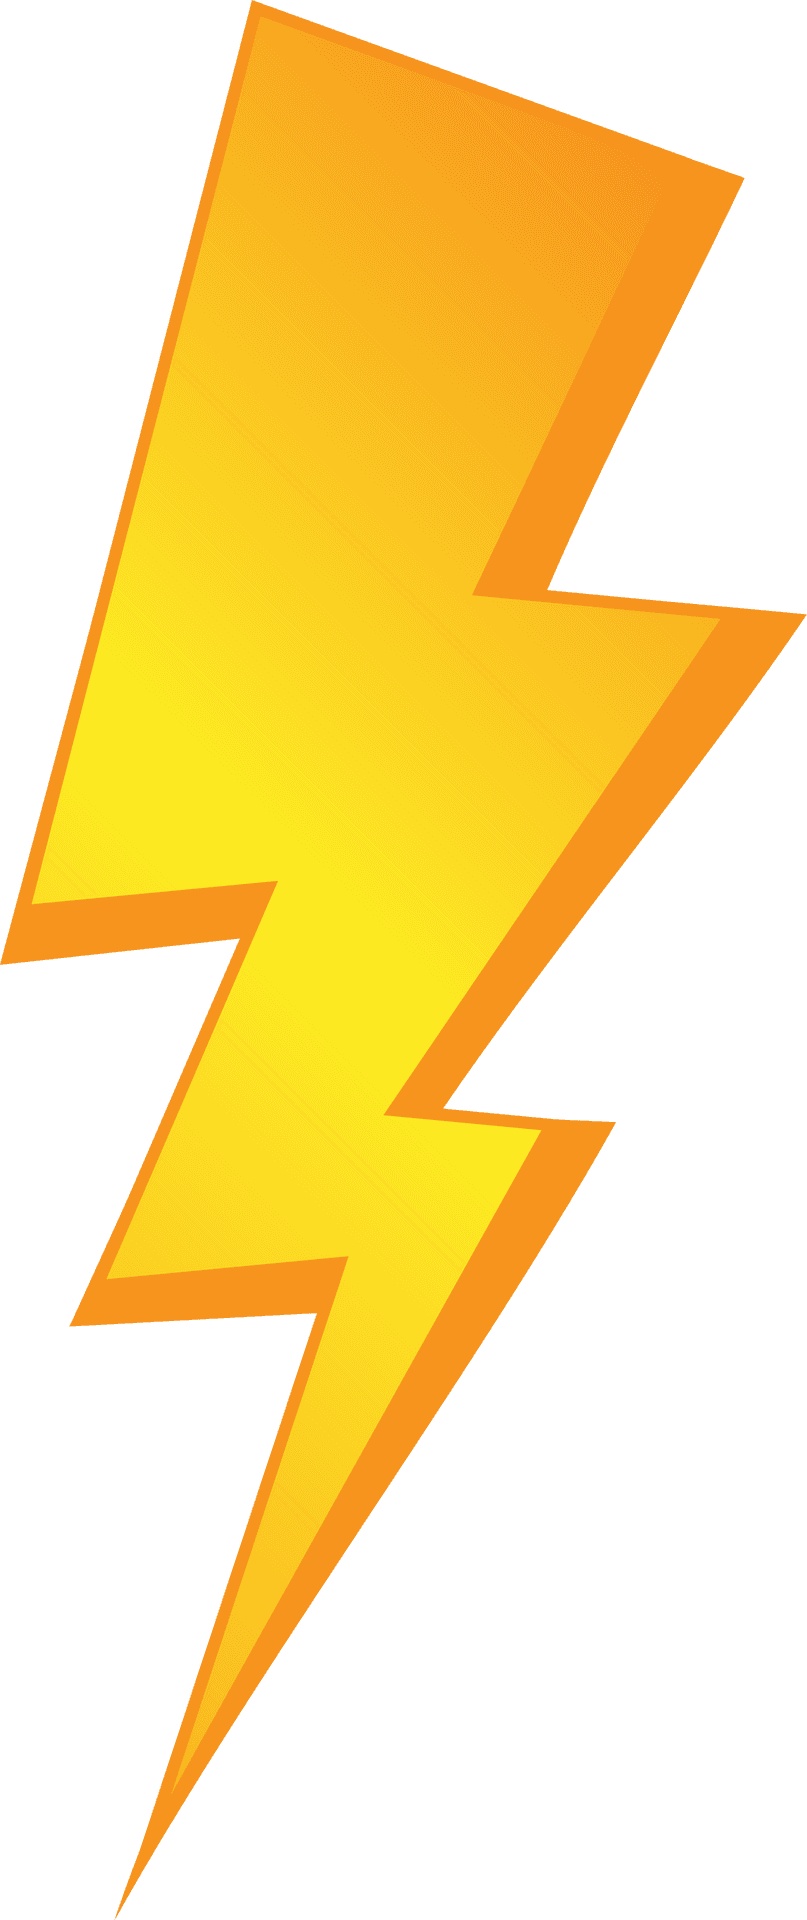 Golden Lightning Bolt Graphic PNG